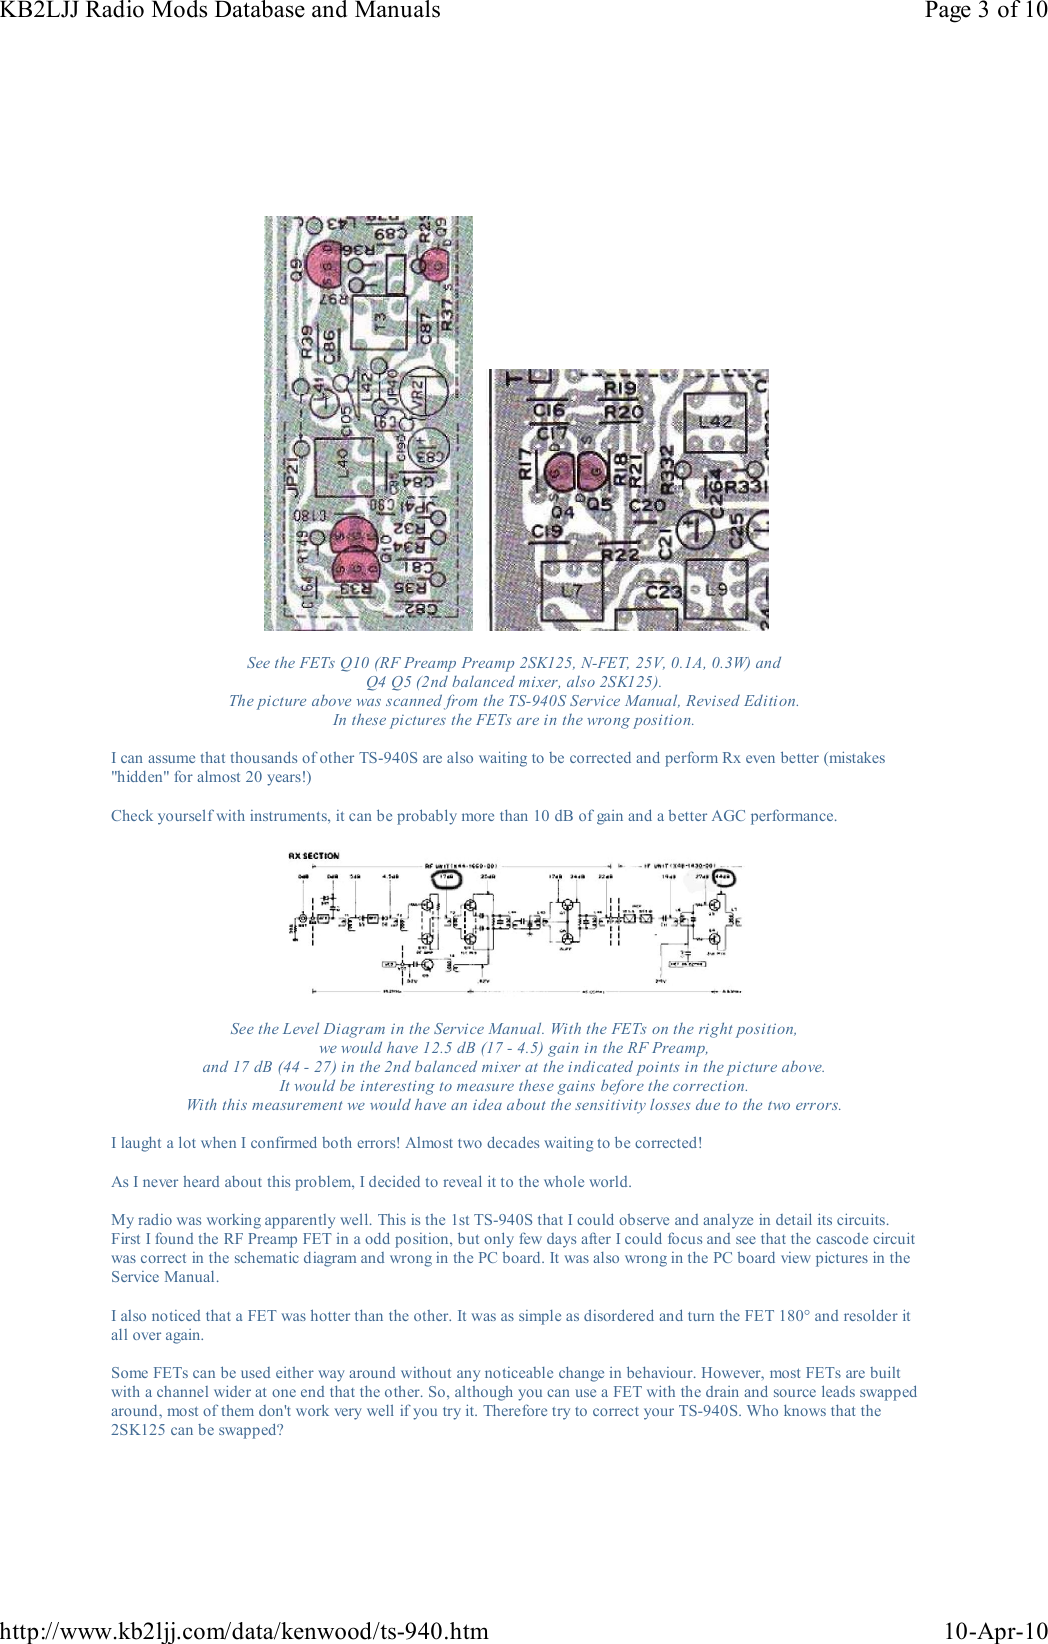 Page 3 of 10 - KENWOOD--TS-940S-MODIFS